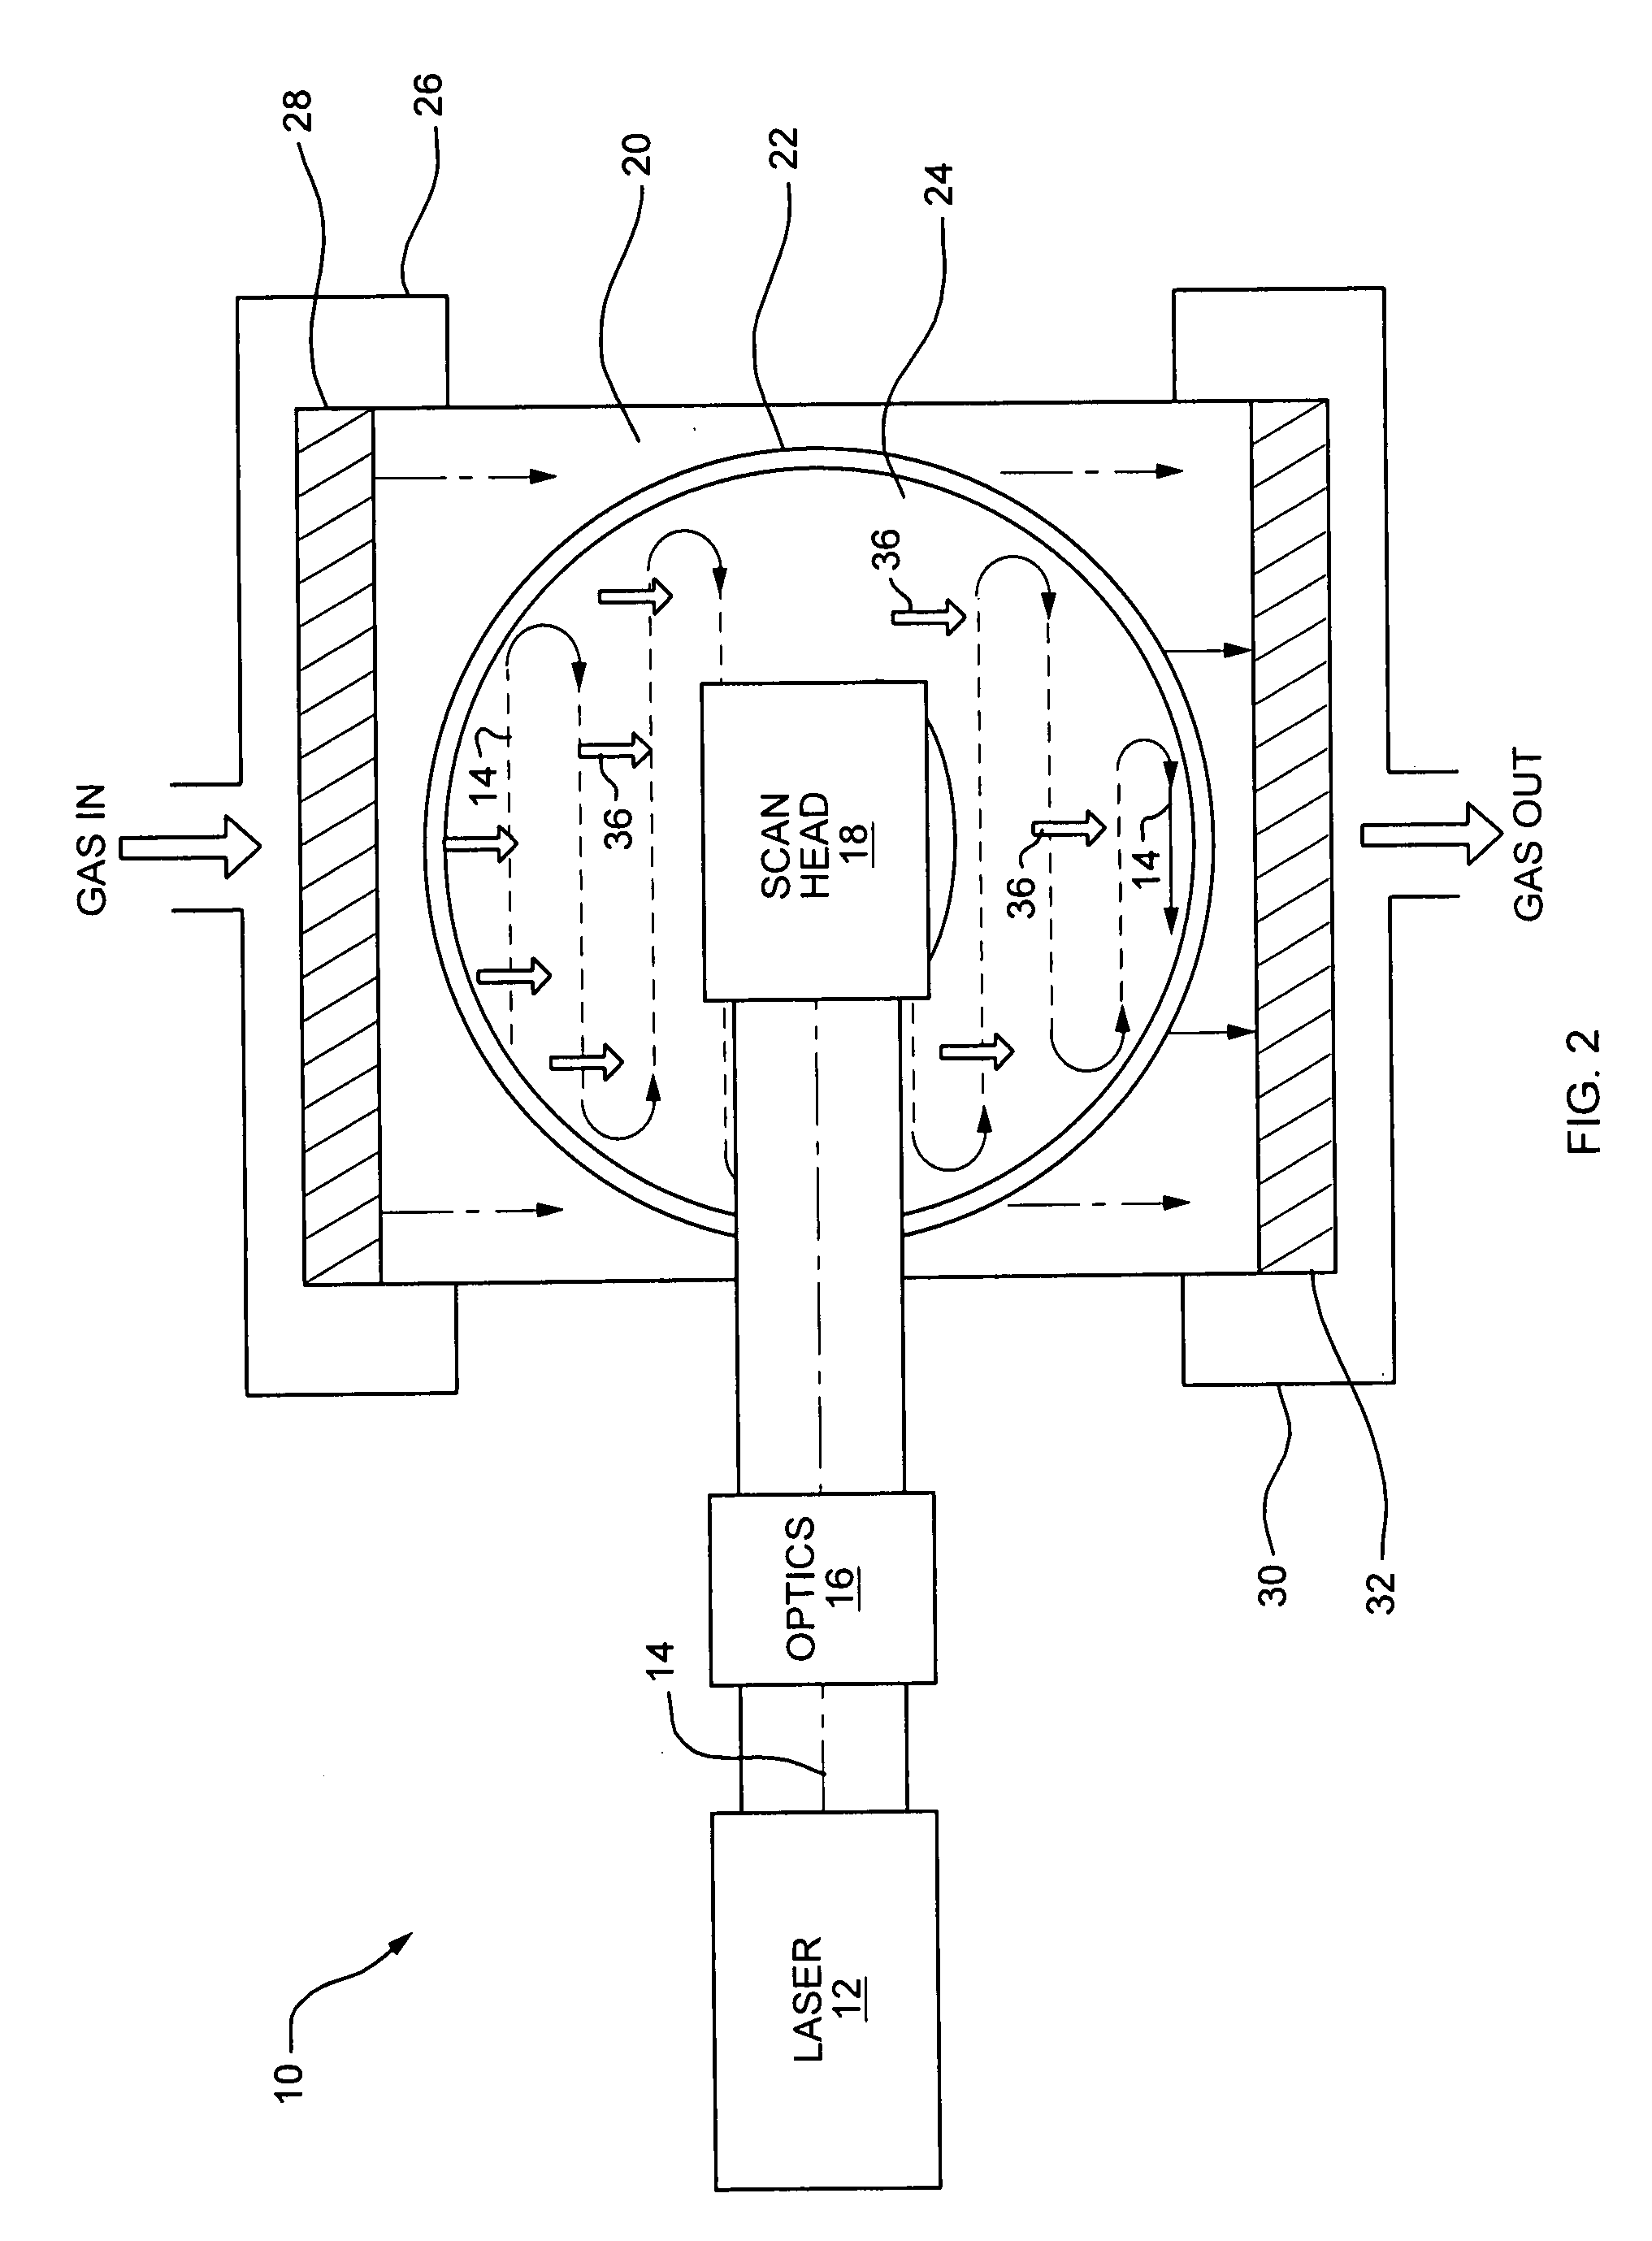 Plenum reactor system